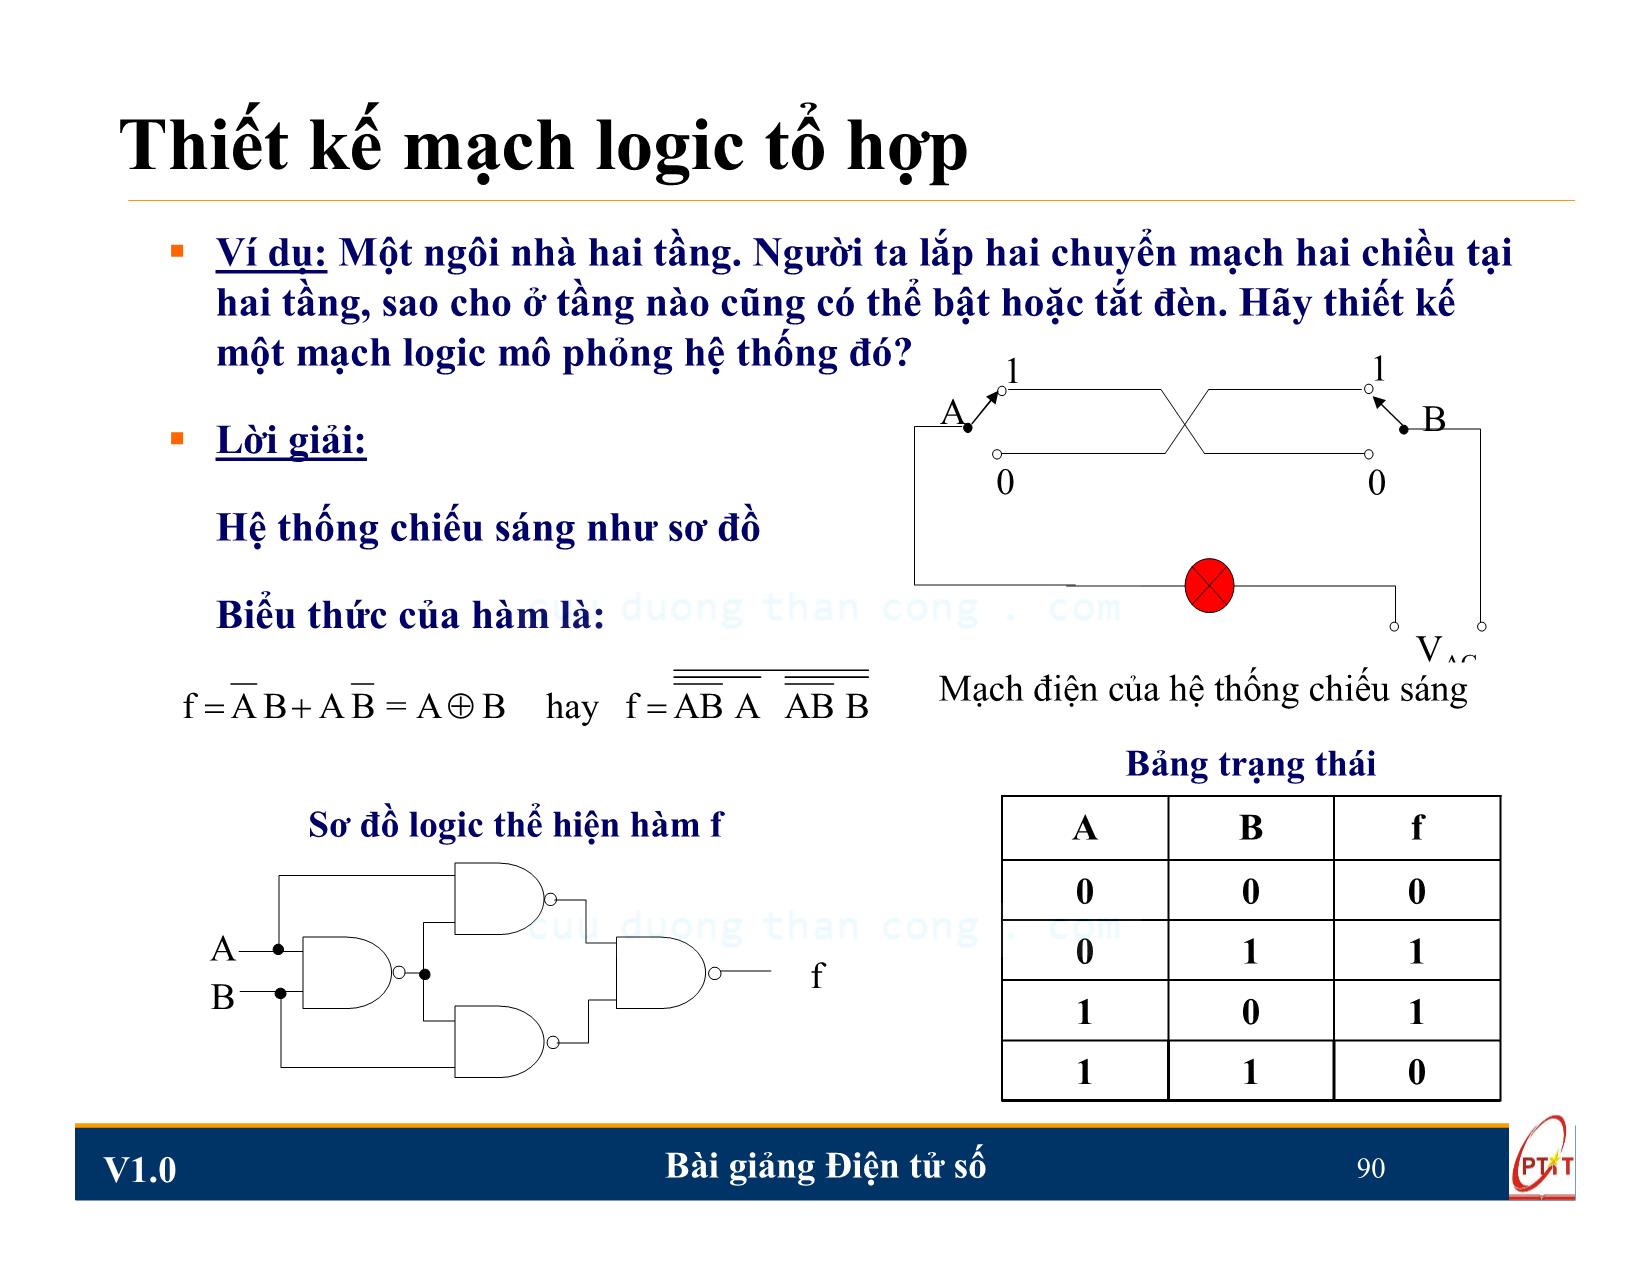 Bài giảng Điện tử số - Chương 4: Mạch logic tổ hợp - Nguyễn Trung Hiếu trang 8